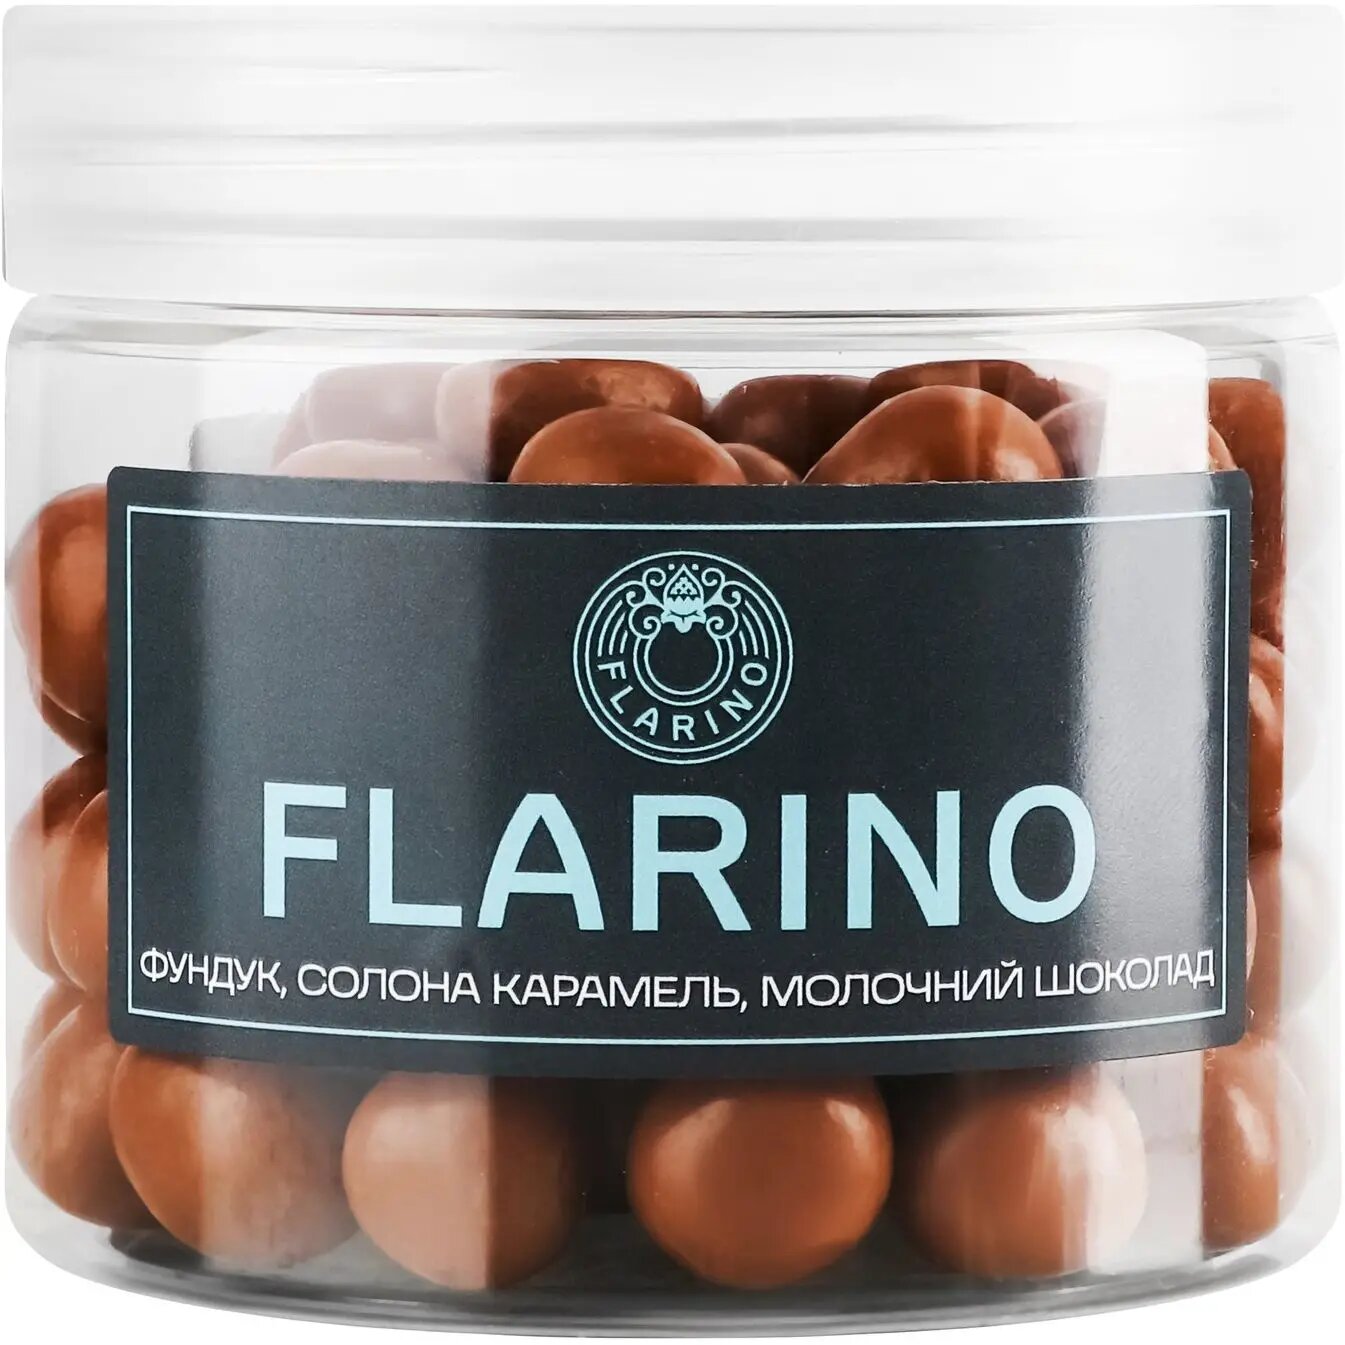 Фундук Flarino у солоній карамелі покритий молочним шоколадом 180 г (924017) - фото 1